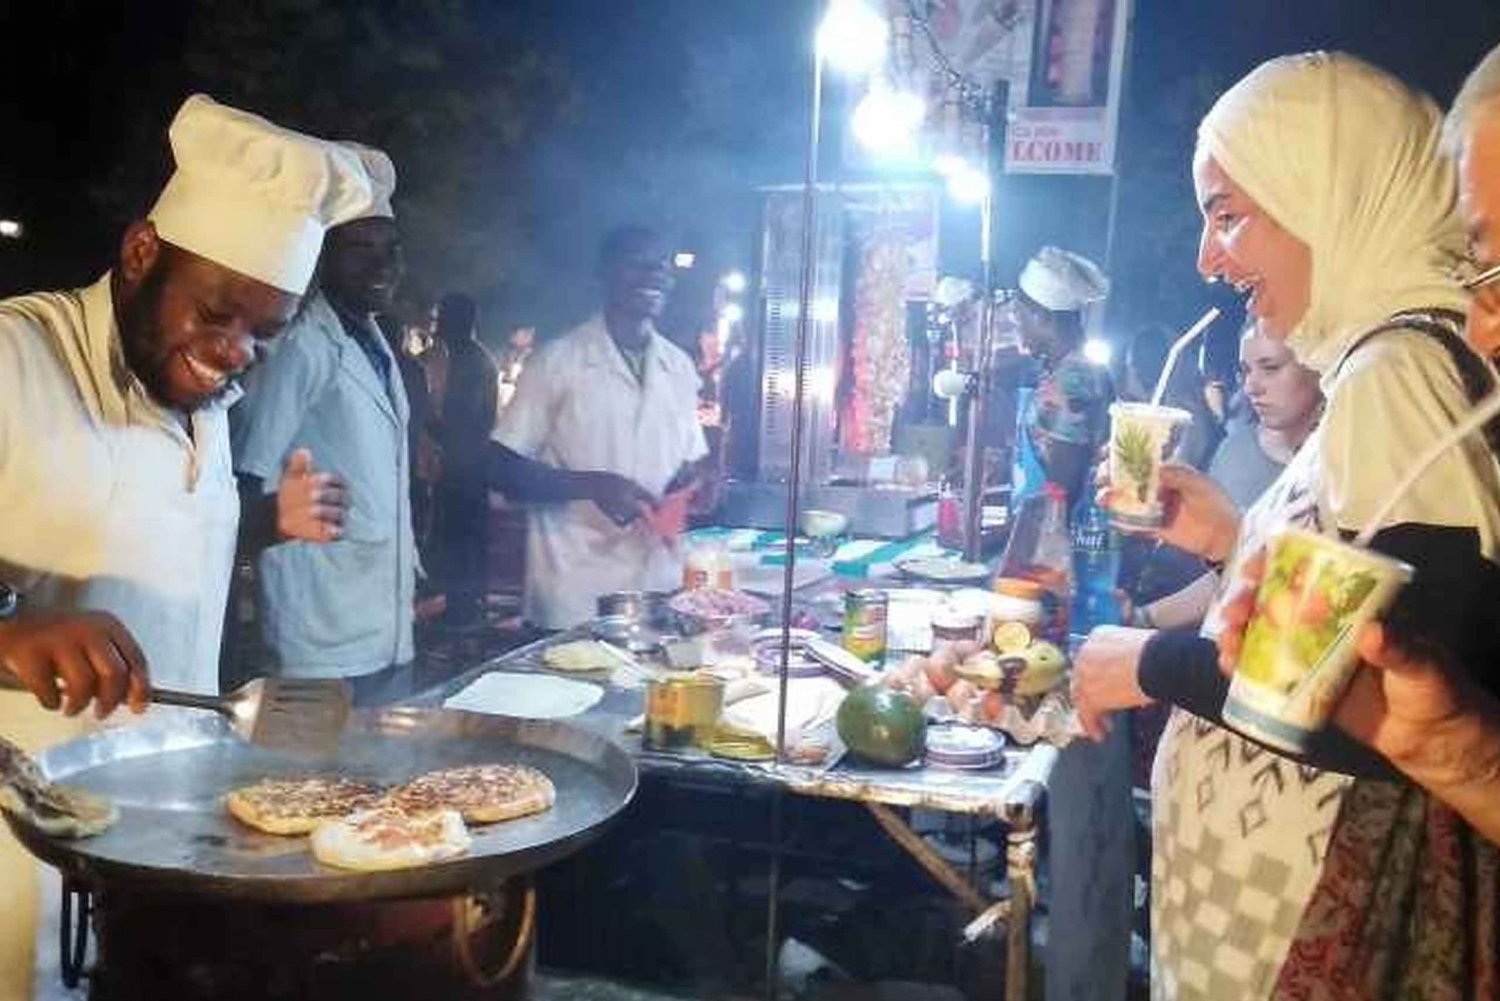 Zanzibeer: Stone Town - nocne życie i uliczne jedzenie - piesza wycieczka.